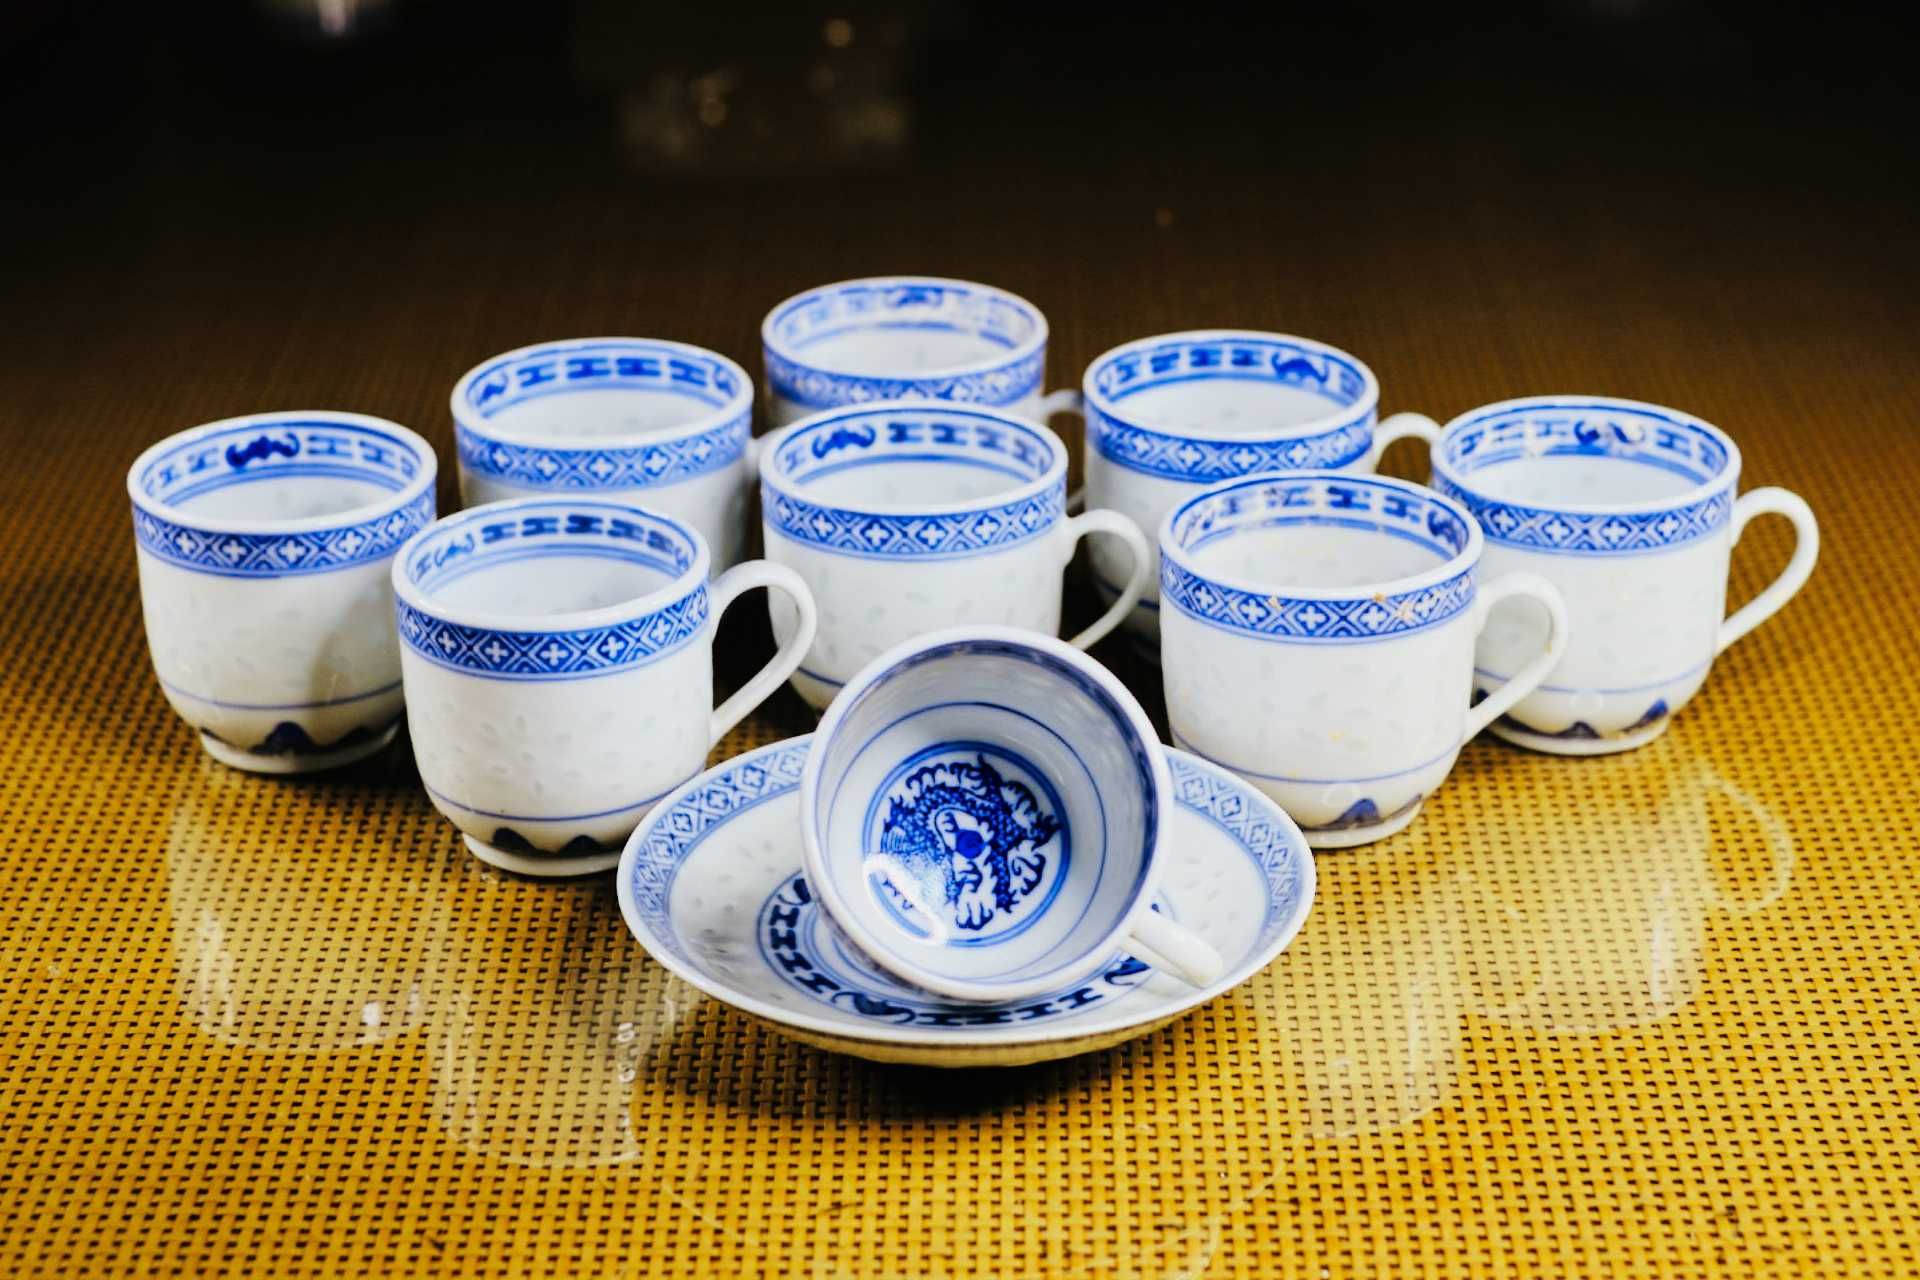 Serviço de chá e café em porcelana chinesa